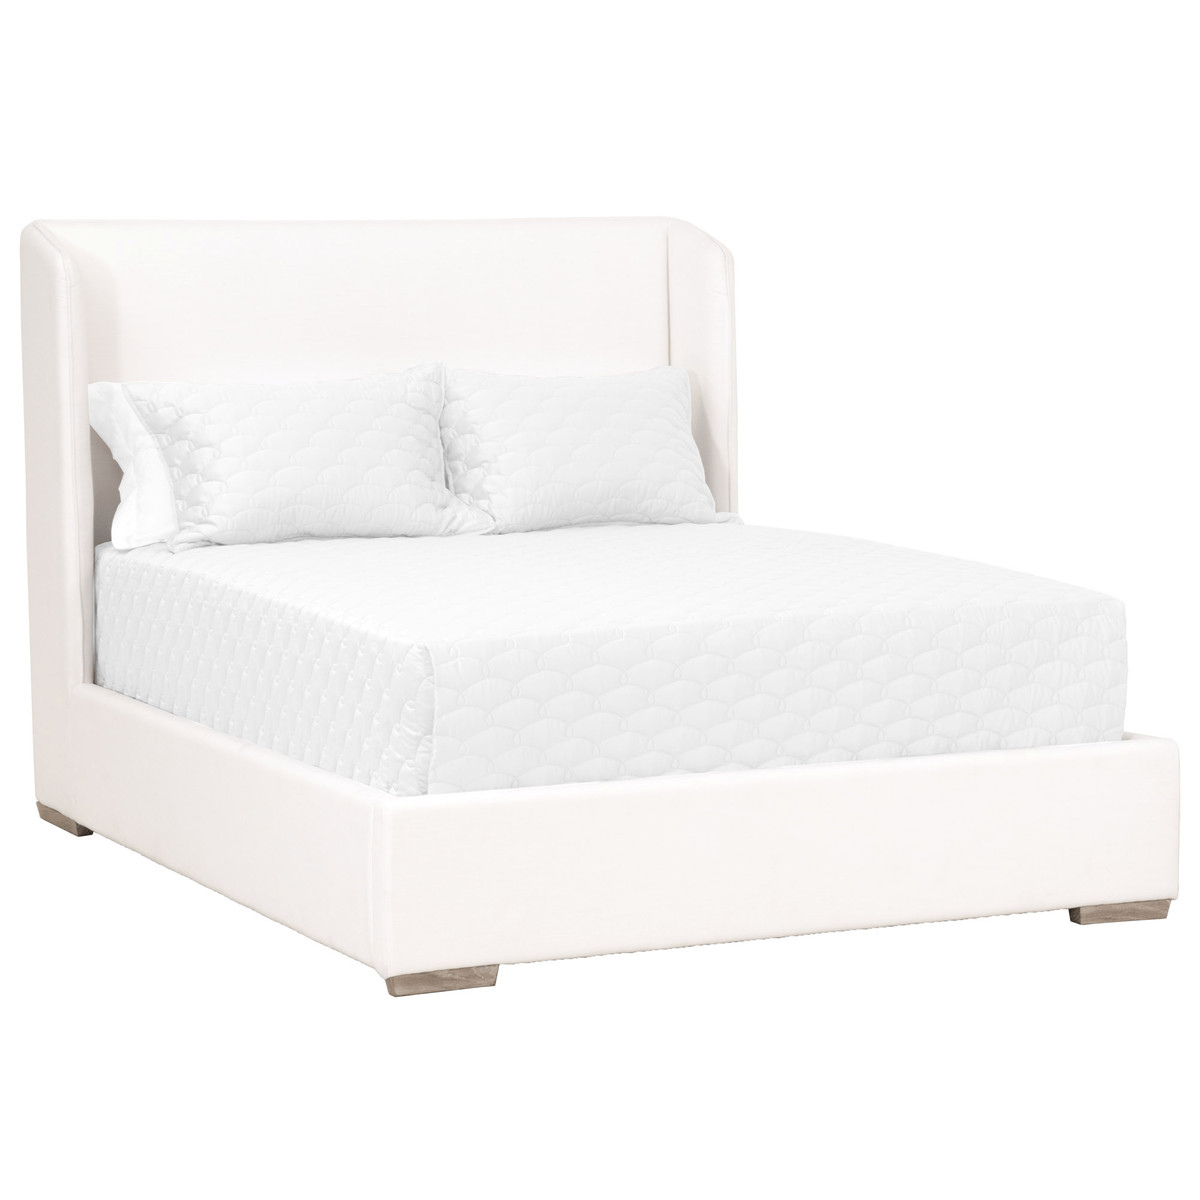 Stewart Bed Bed